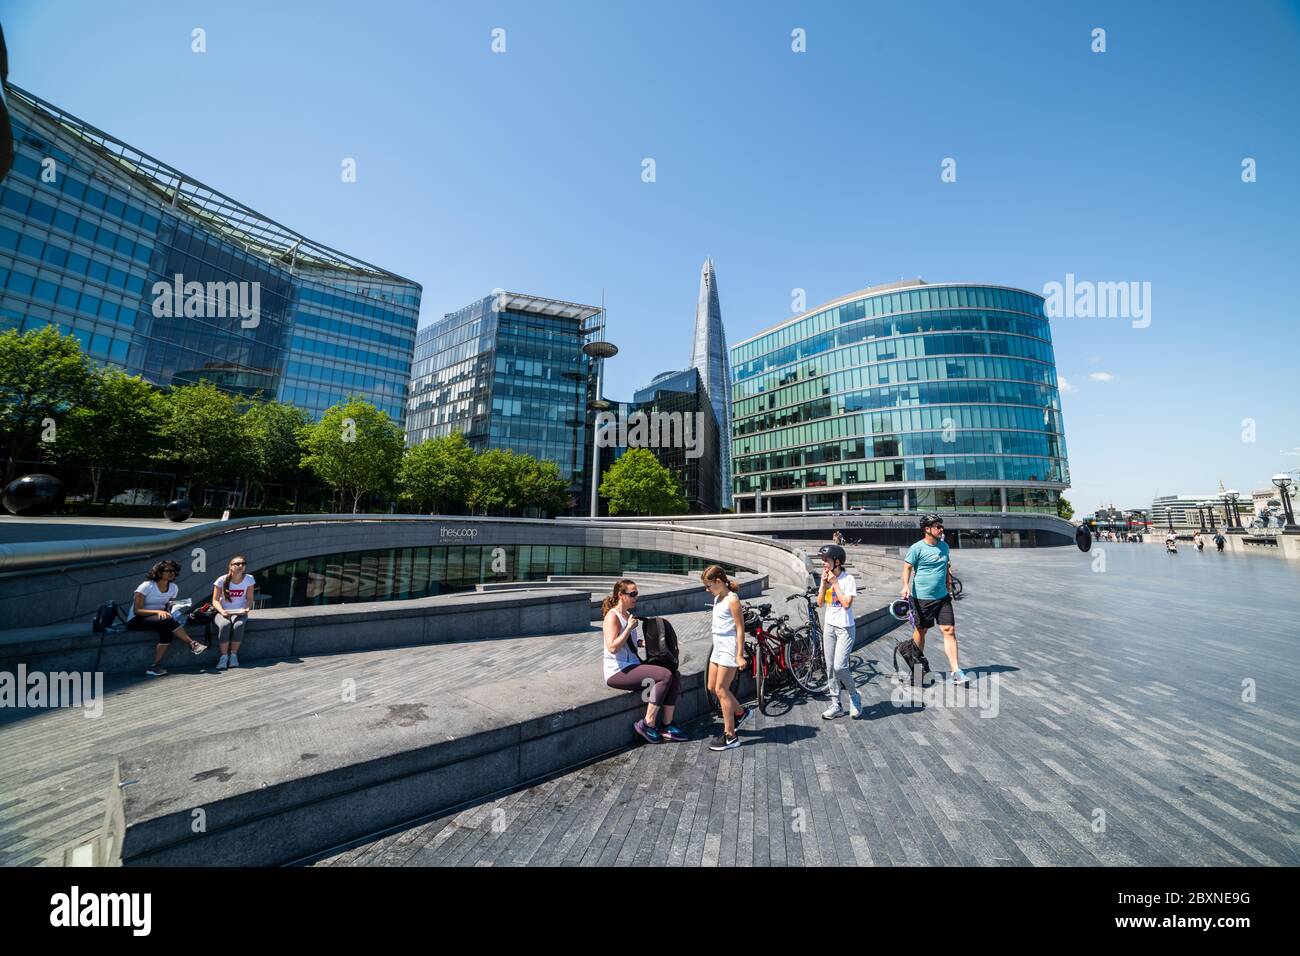 Una bella giornata sulla Queens Walk, South Bank, Londra, Regno Unito, con la gente fuori godendo il sole. Foto Stock